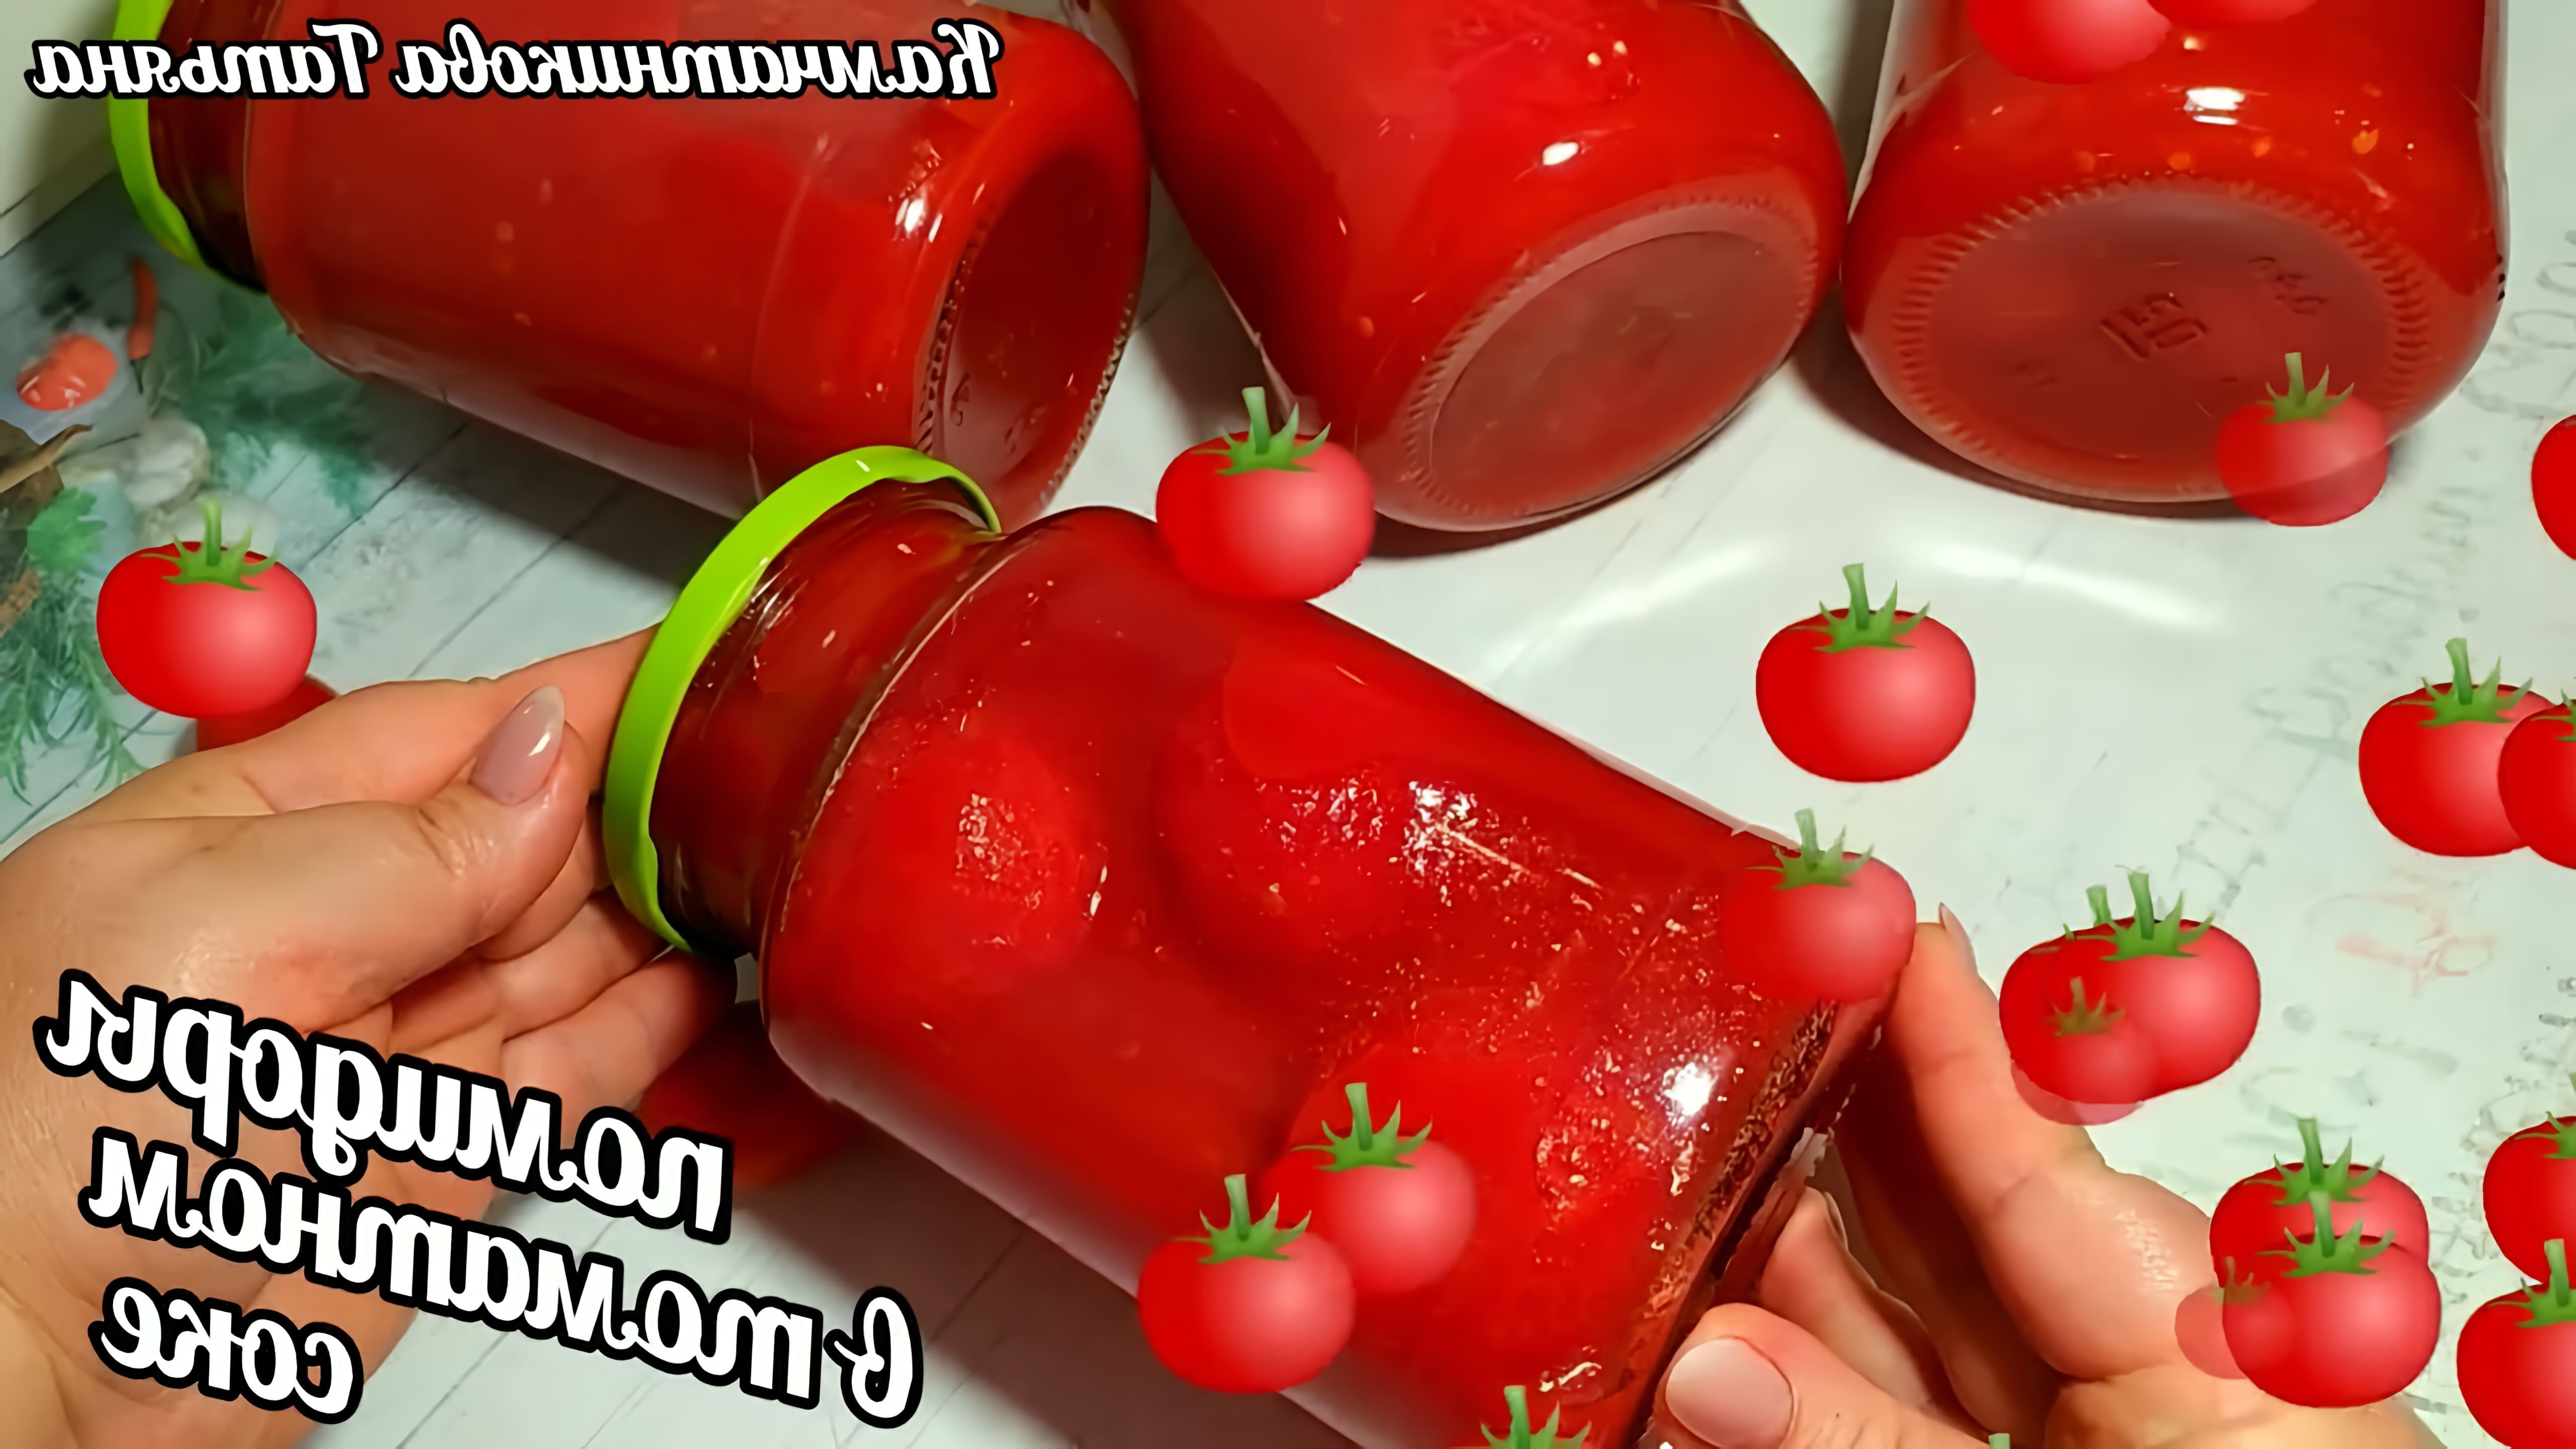 В этом видео демонстрируется процесс приготовления вкусных помидоров в собственном соку